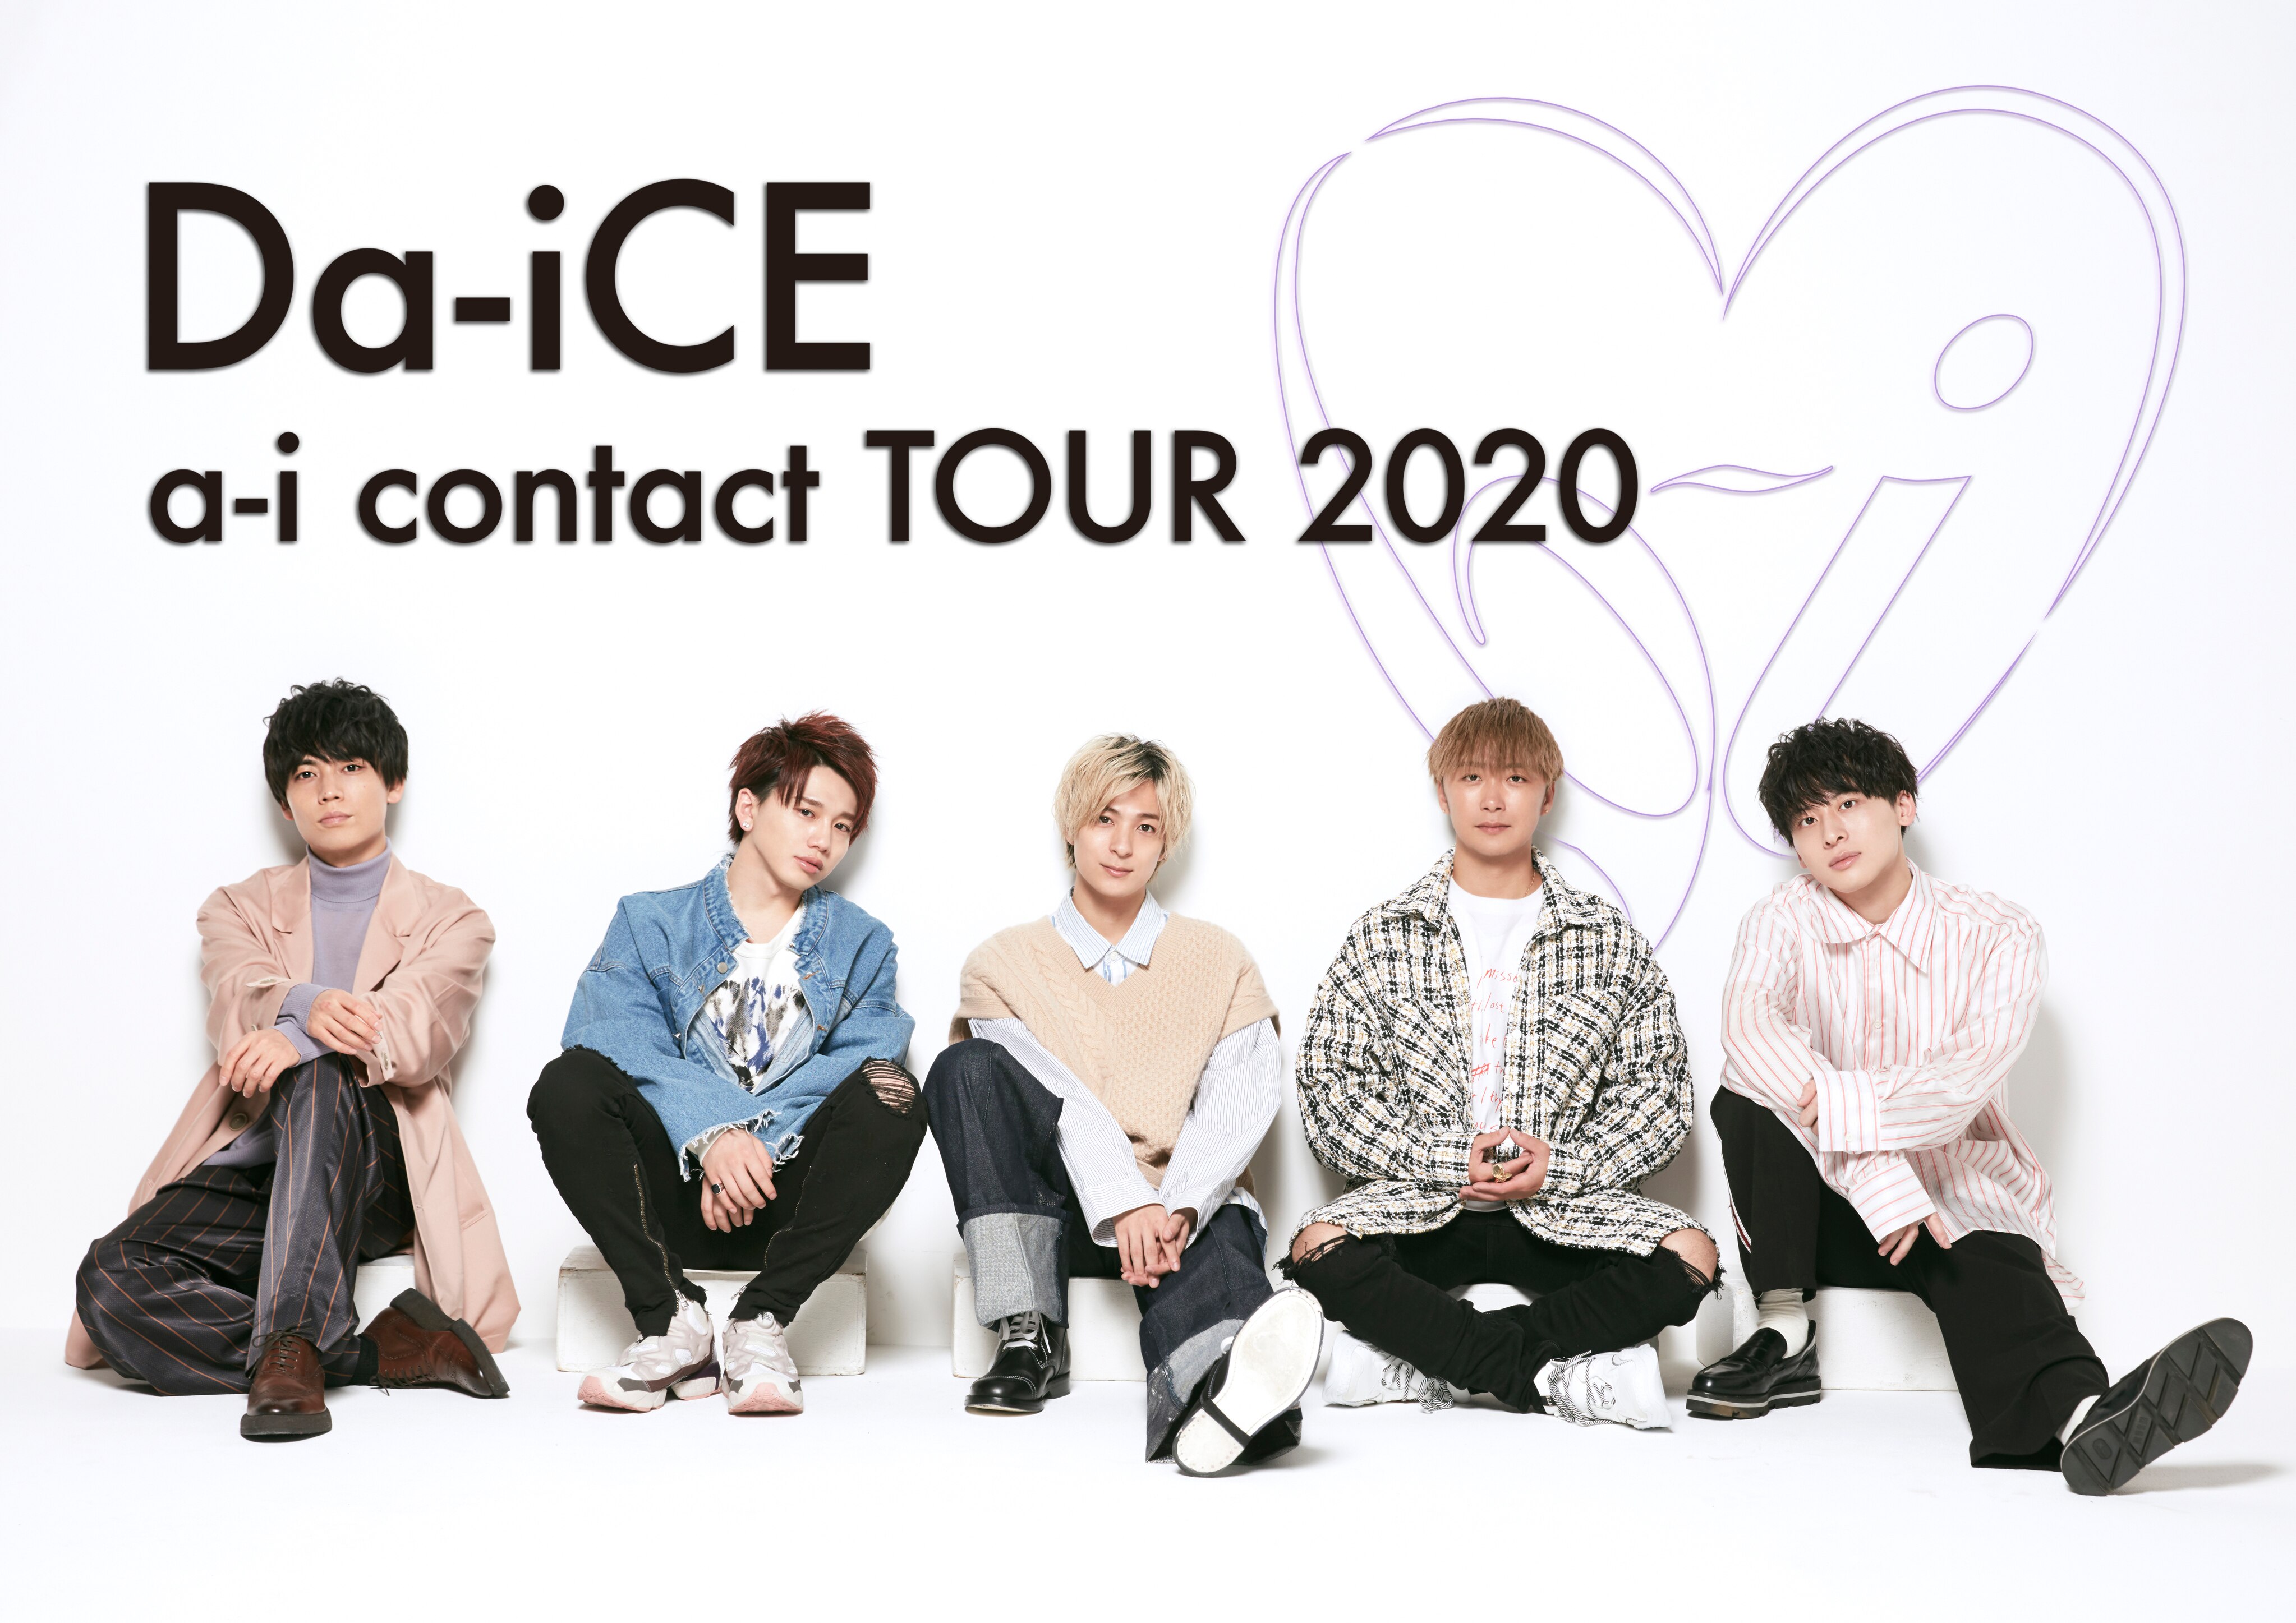 グッズ情報]Da-iCE a-i contact TOUR 2020 - NEWS | Da-iCE（ダイス 